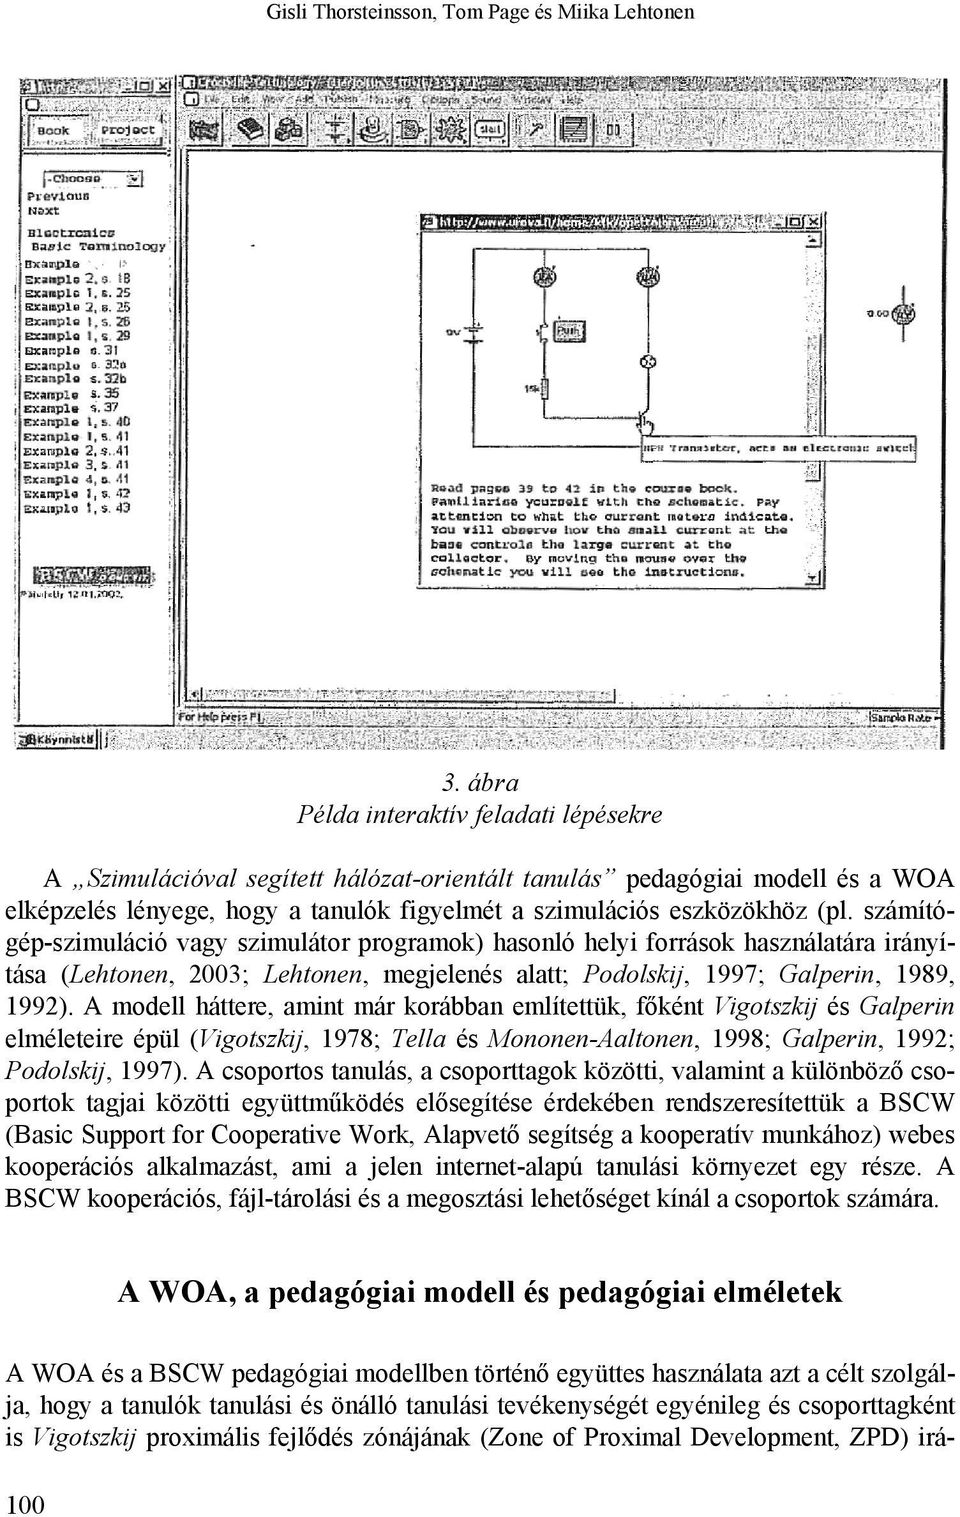 számítógép-szimuláció vagy szimulátor programok) hasonló helyi források használatára irányítása (Lehtonen, 2003; Lehtonen, megjelenés alatt; Podolskij, 1997; Galperin, 1989, 1992).